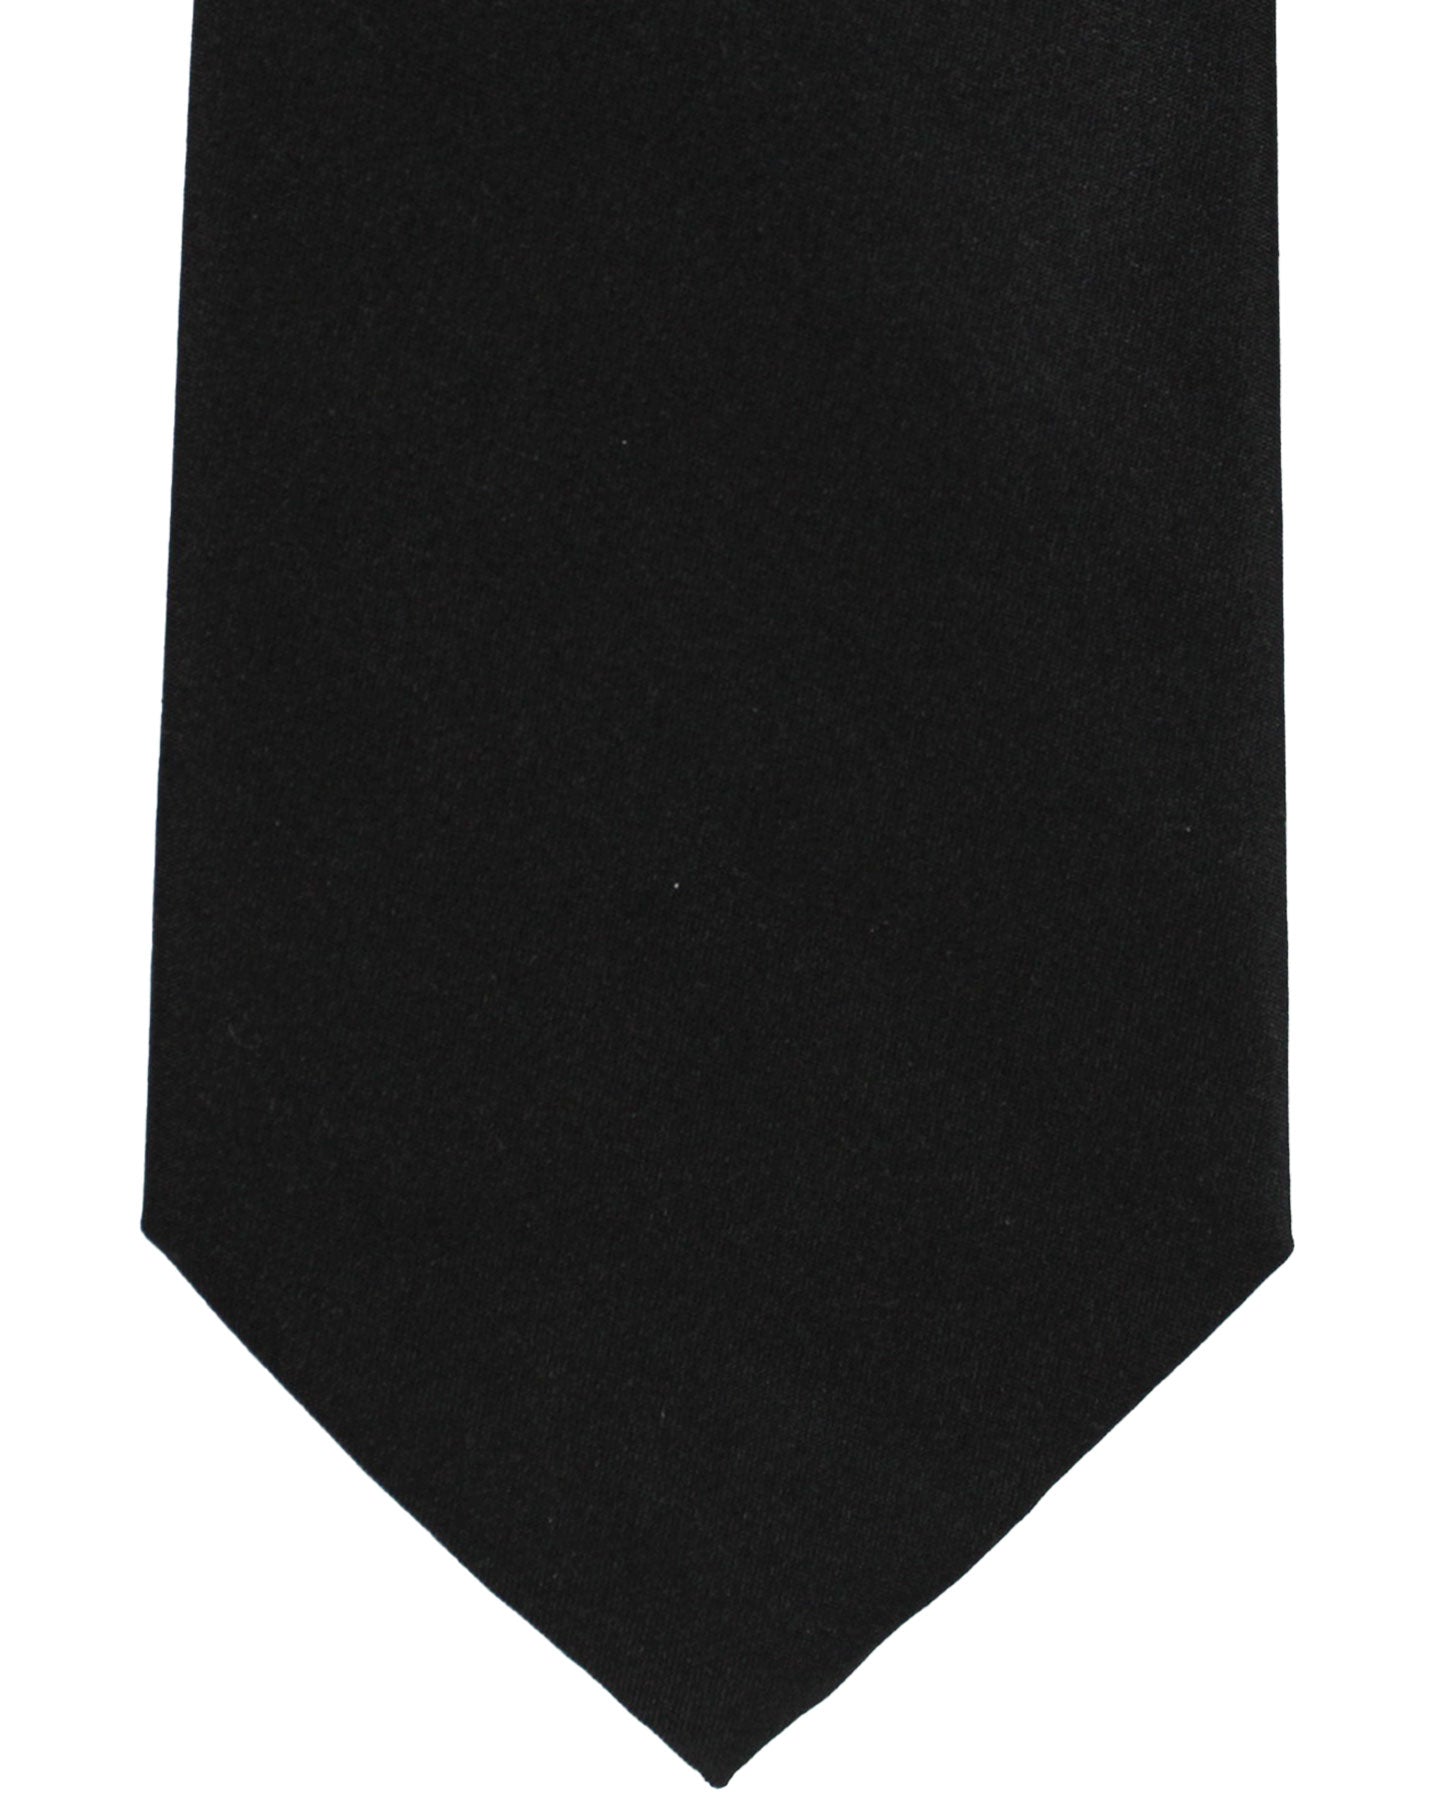 Armani Silk Tie Black Solid Armani Collezioni